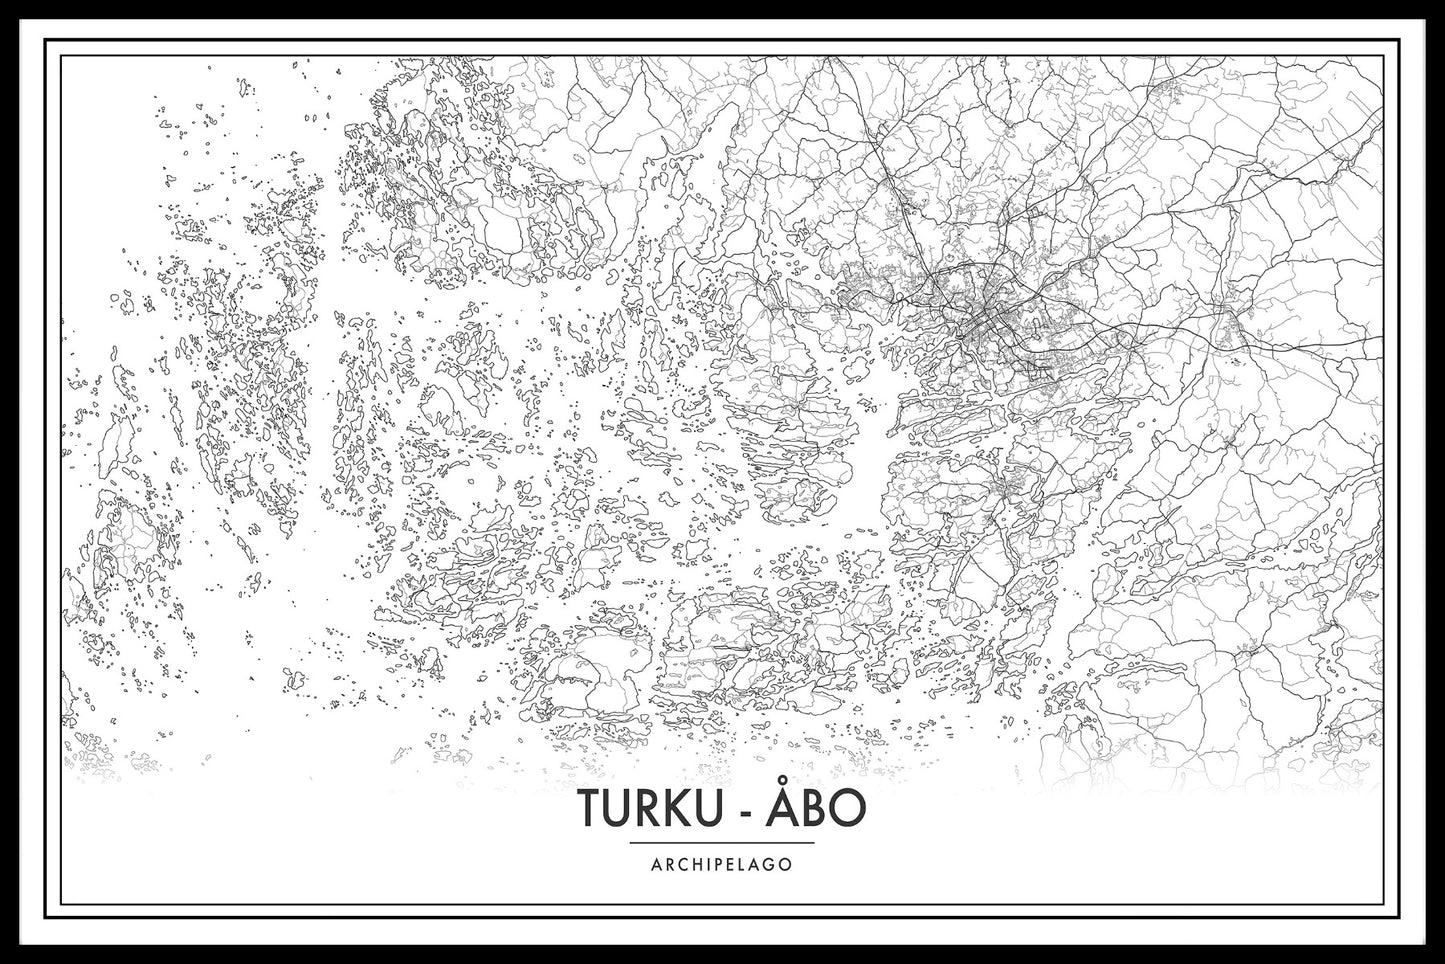  Kaartvermeldingen voor de kaart van de archipel van Turku